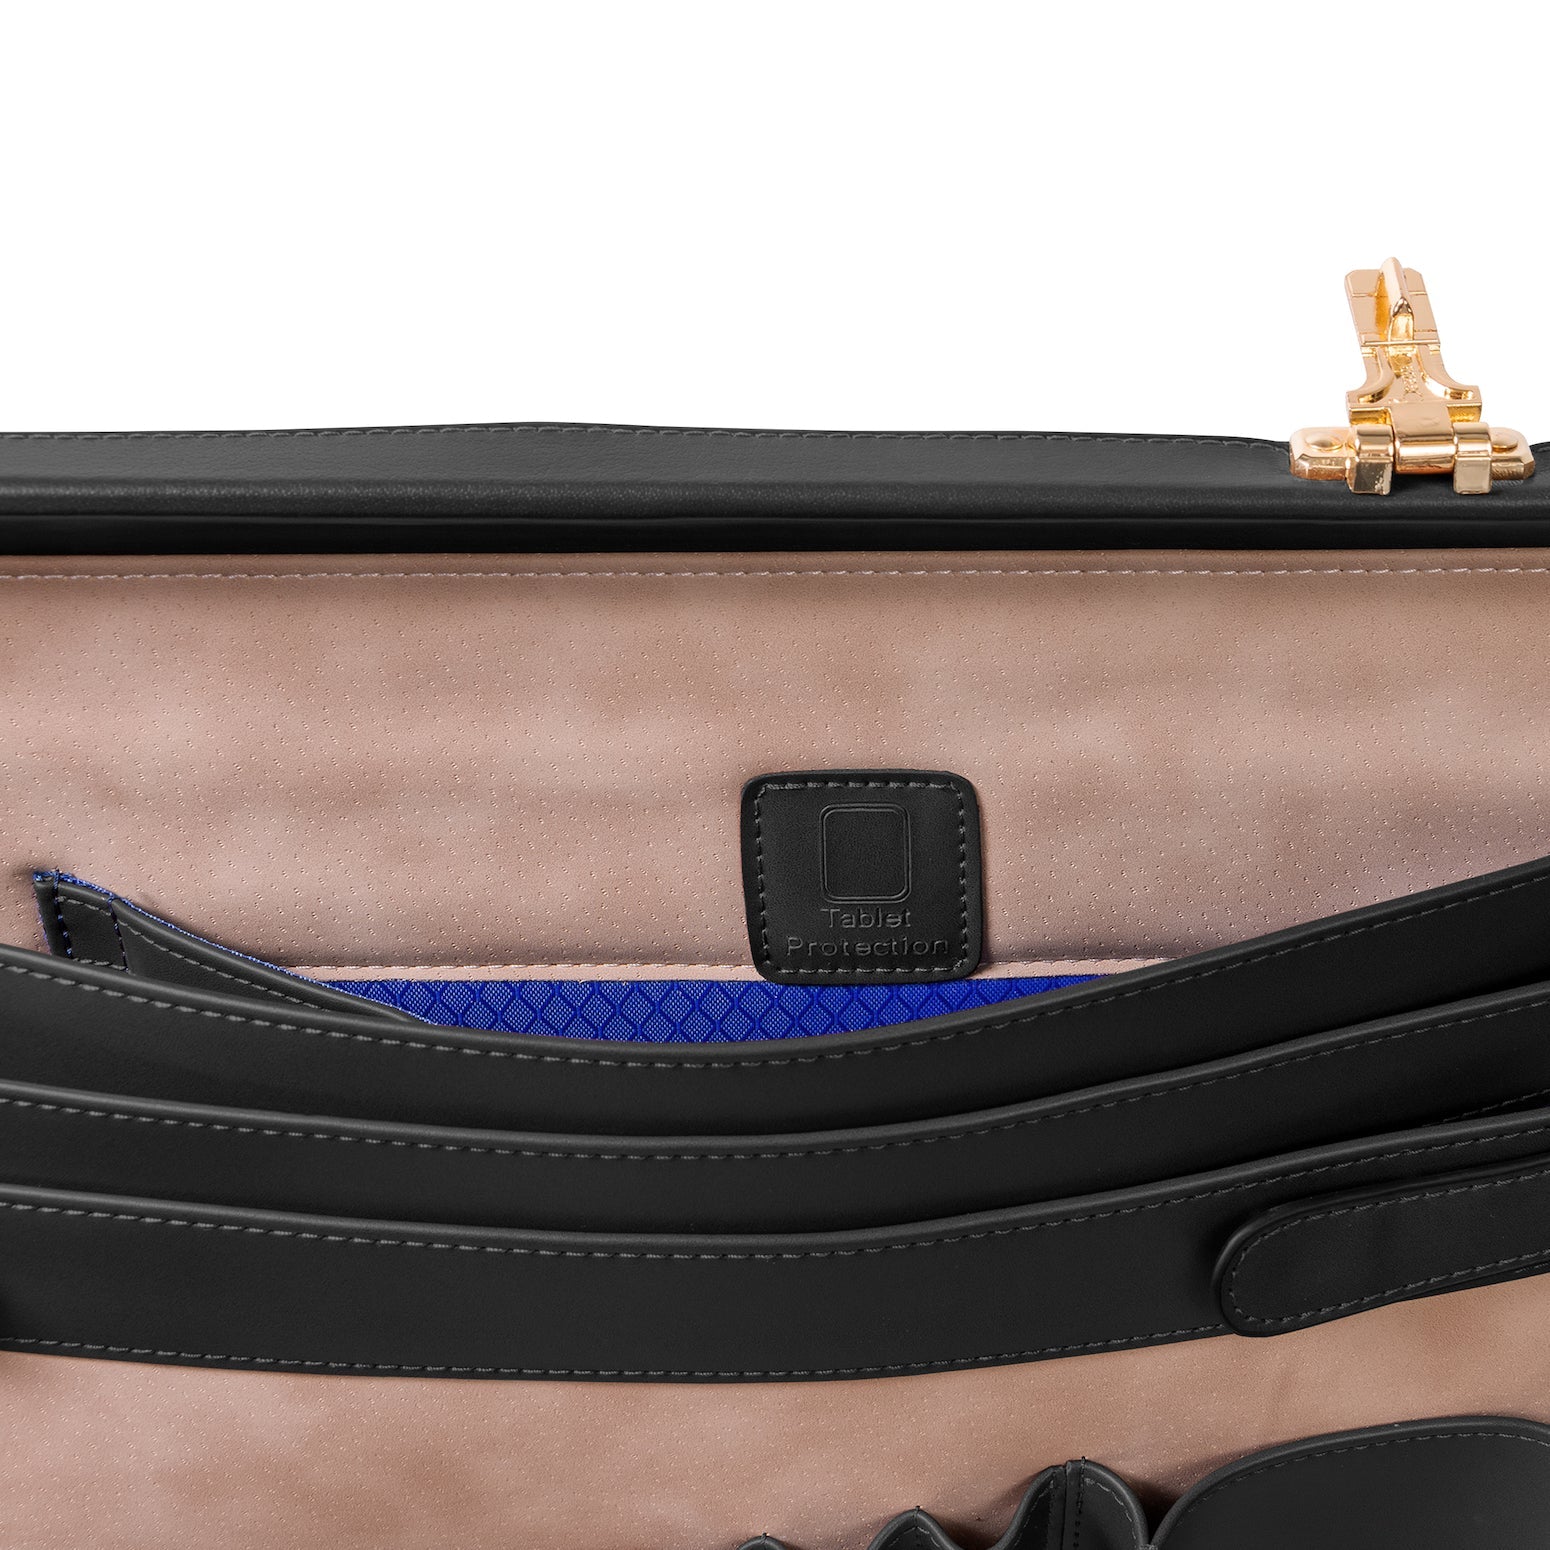 McKlein REAGAN Leather 3.5" Attaché Briefcase